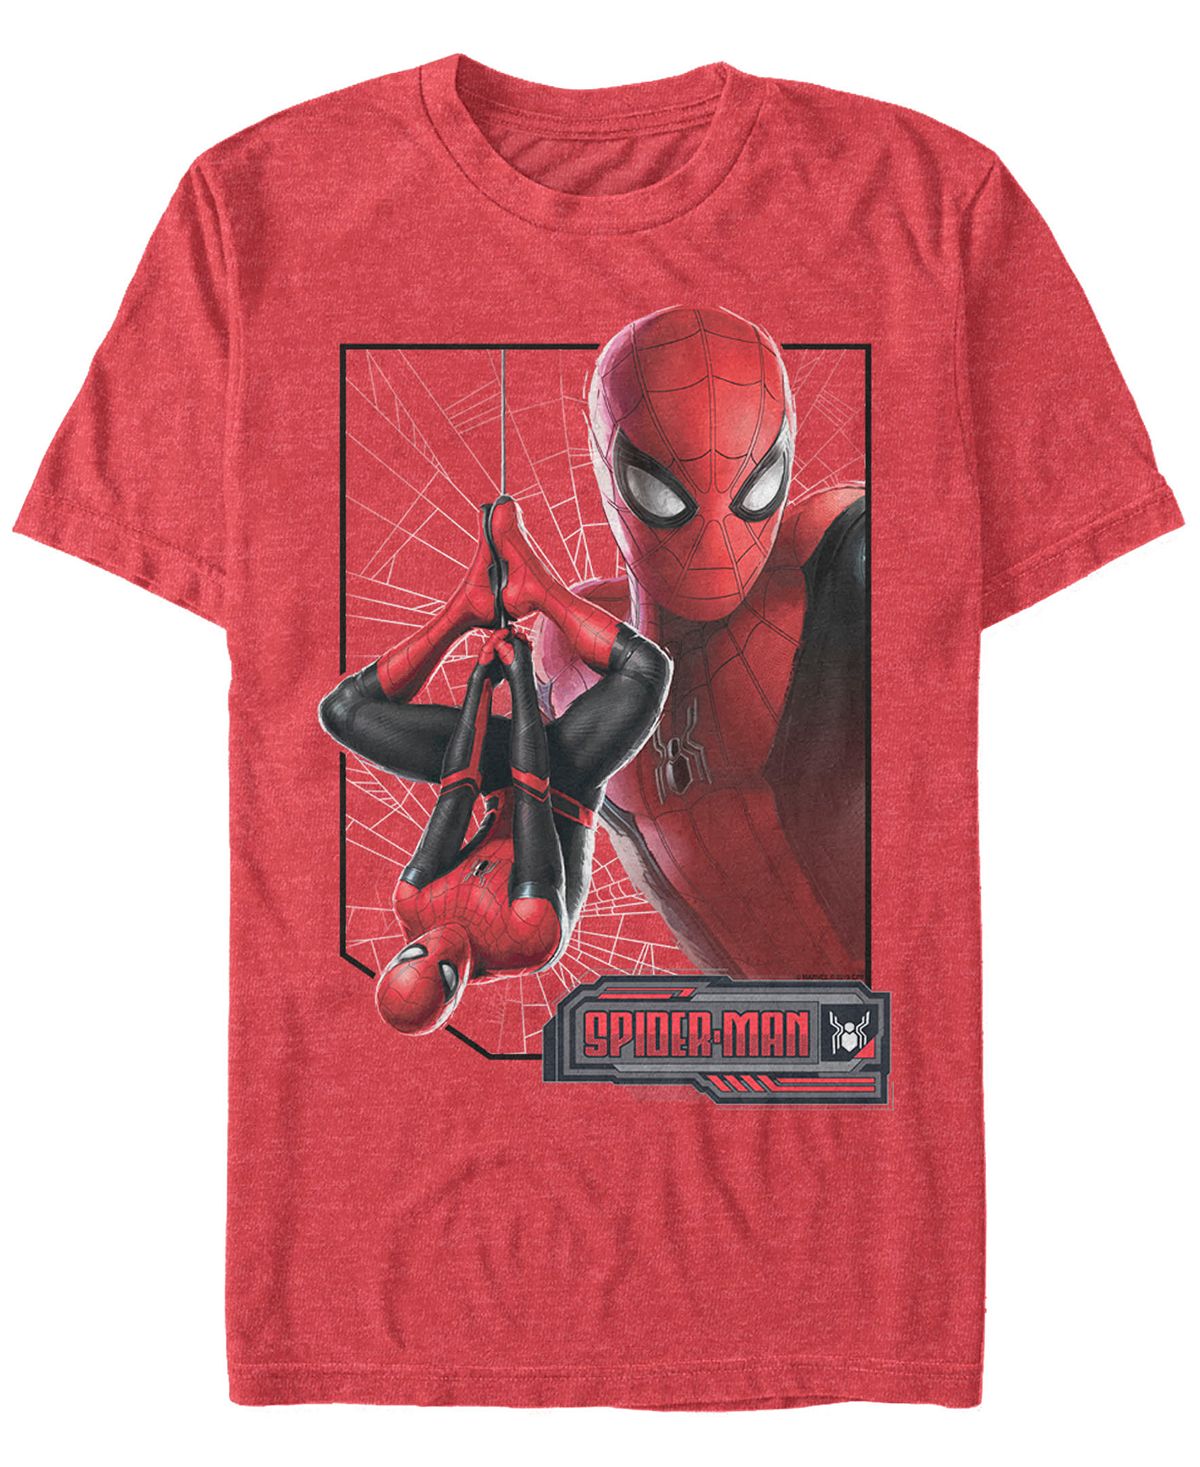 Мужская футболка с короткими рукавами marvel с изображением человека-паука с перевернутым профилем и изображением человека-паука Fifth Sun, мульти